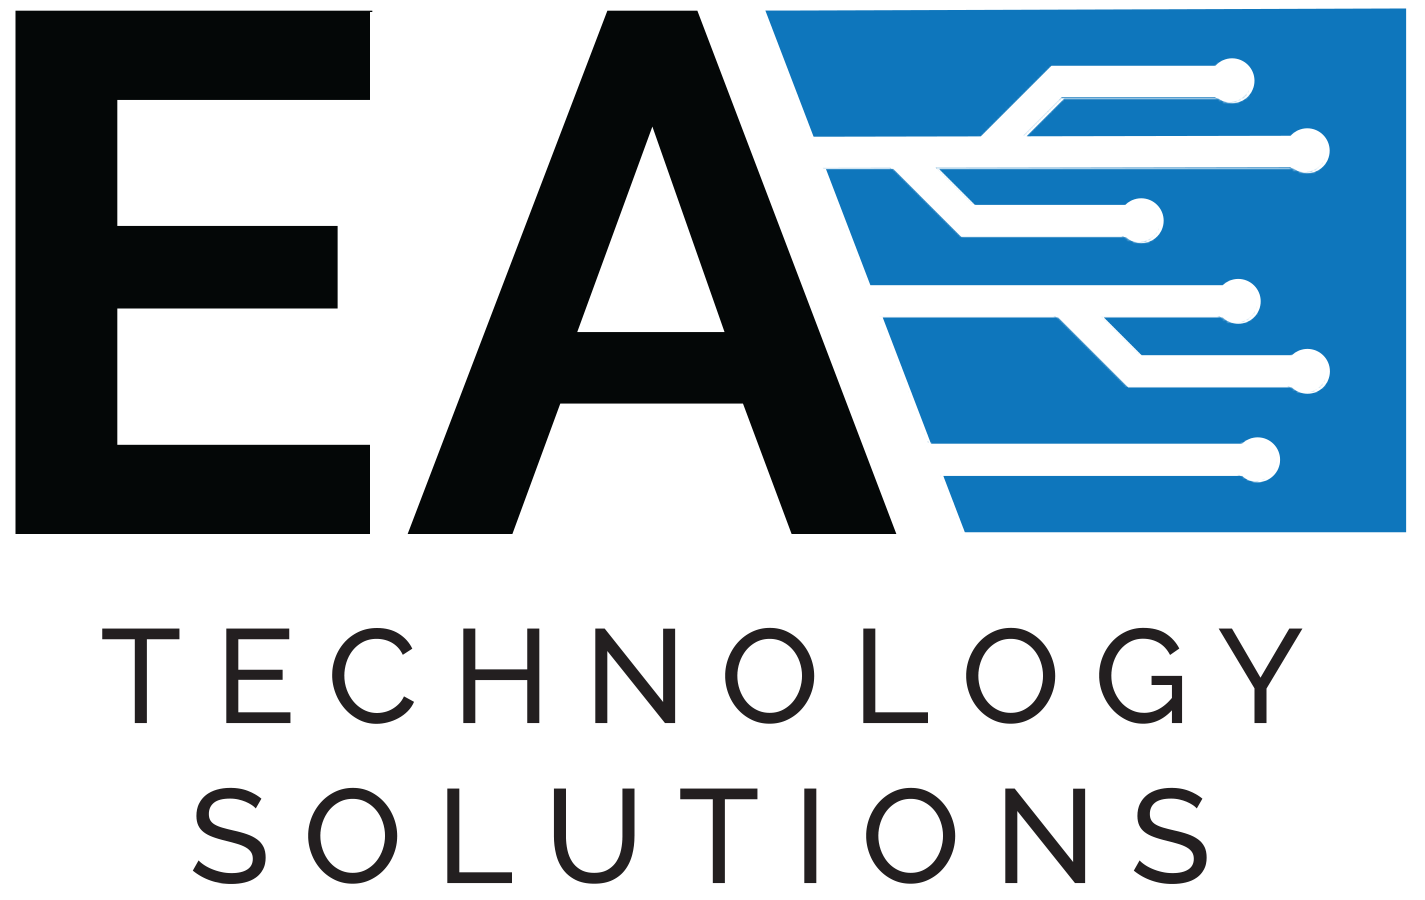 EA Technology Solutions